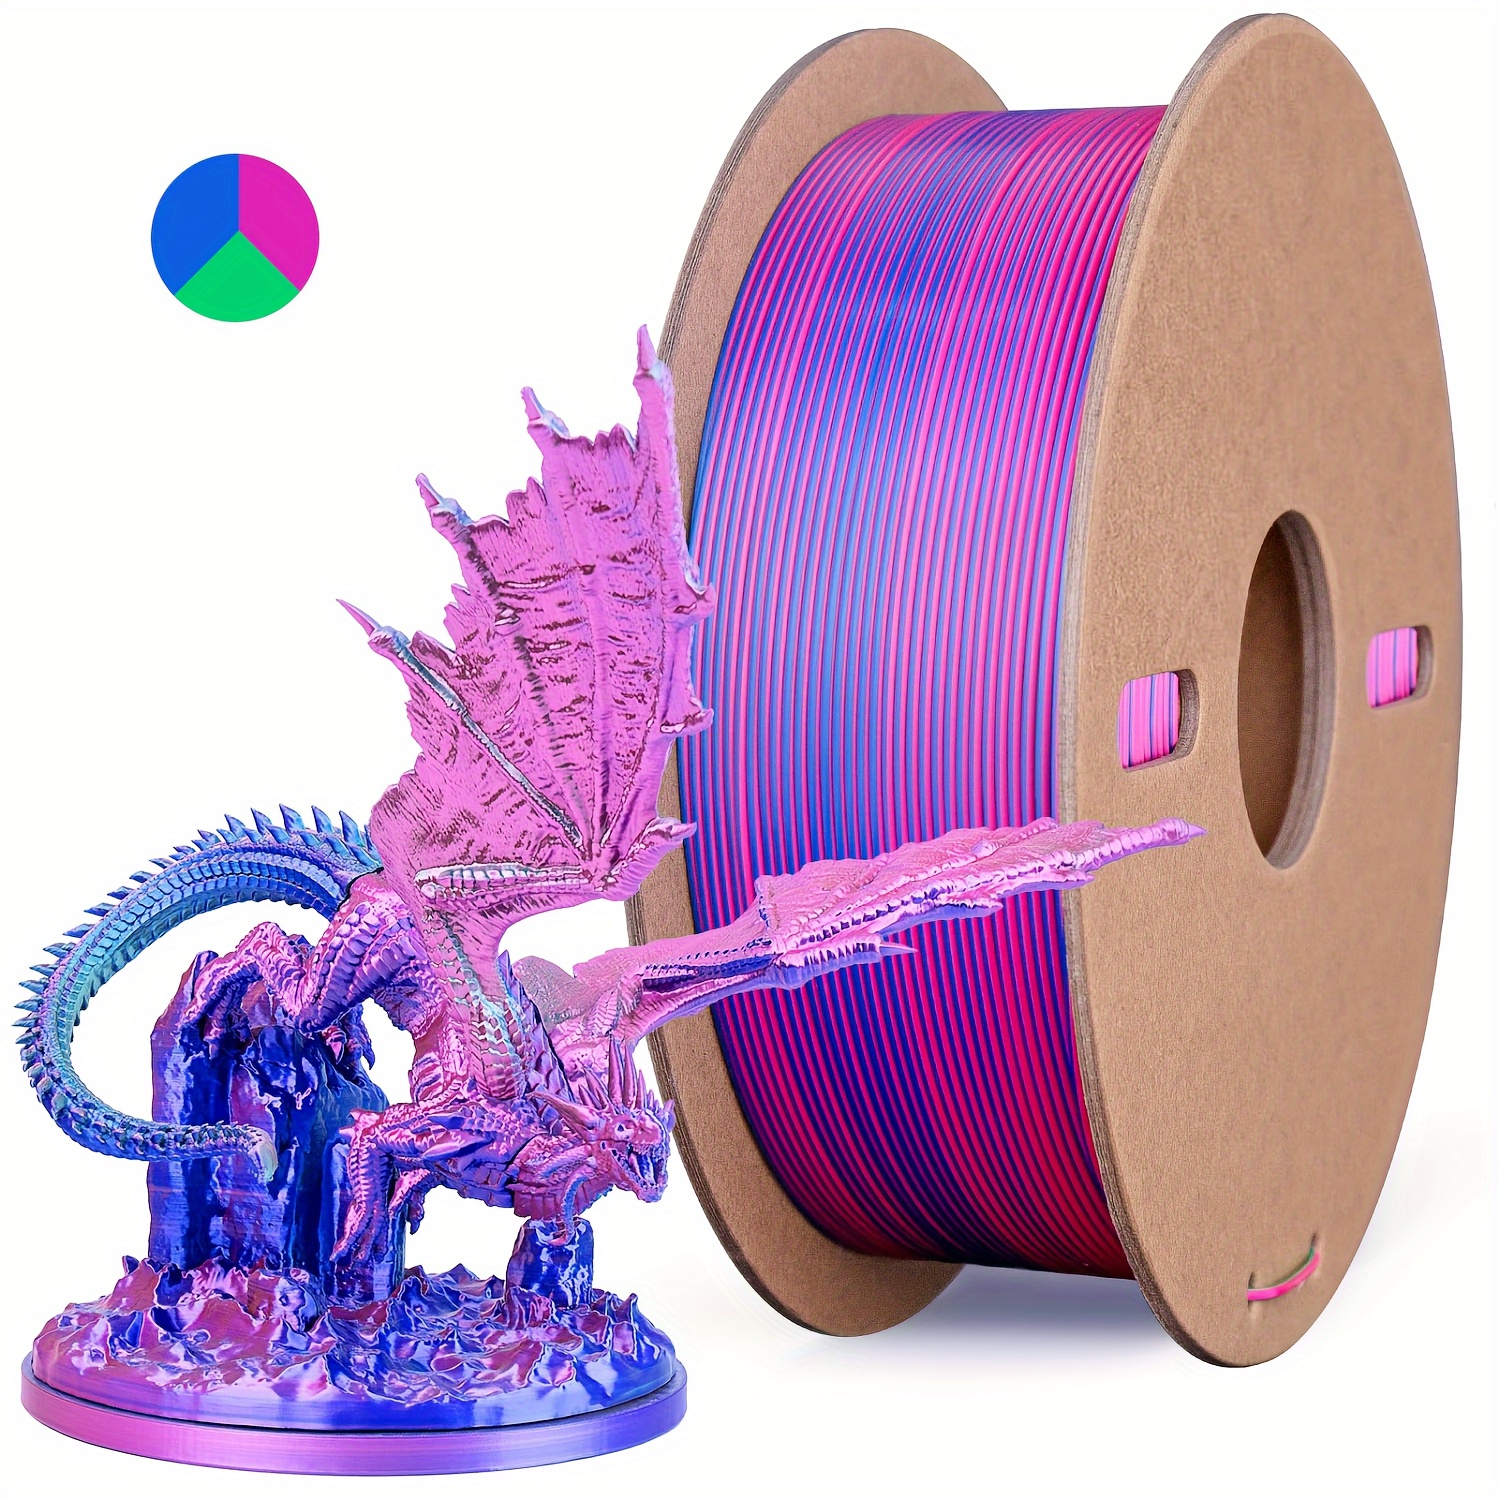 Filament d'imprimante 3D PLA de diamètre 3-00 mm violet translucide 2603C